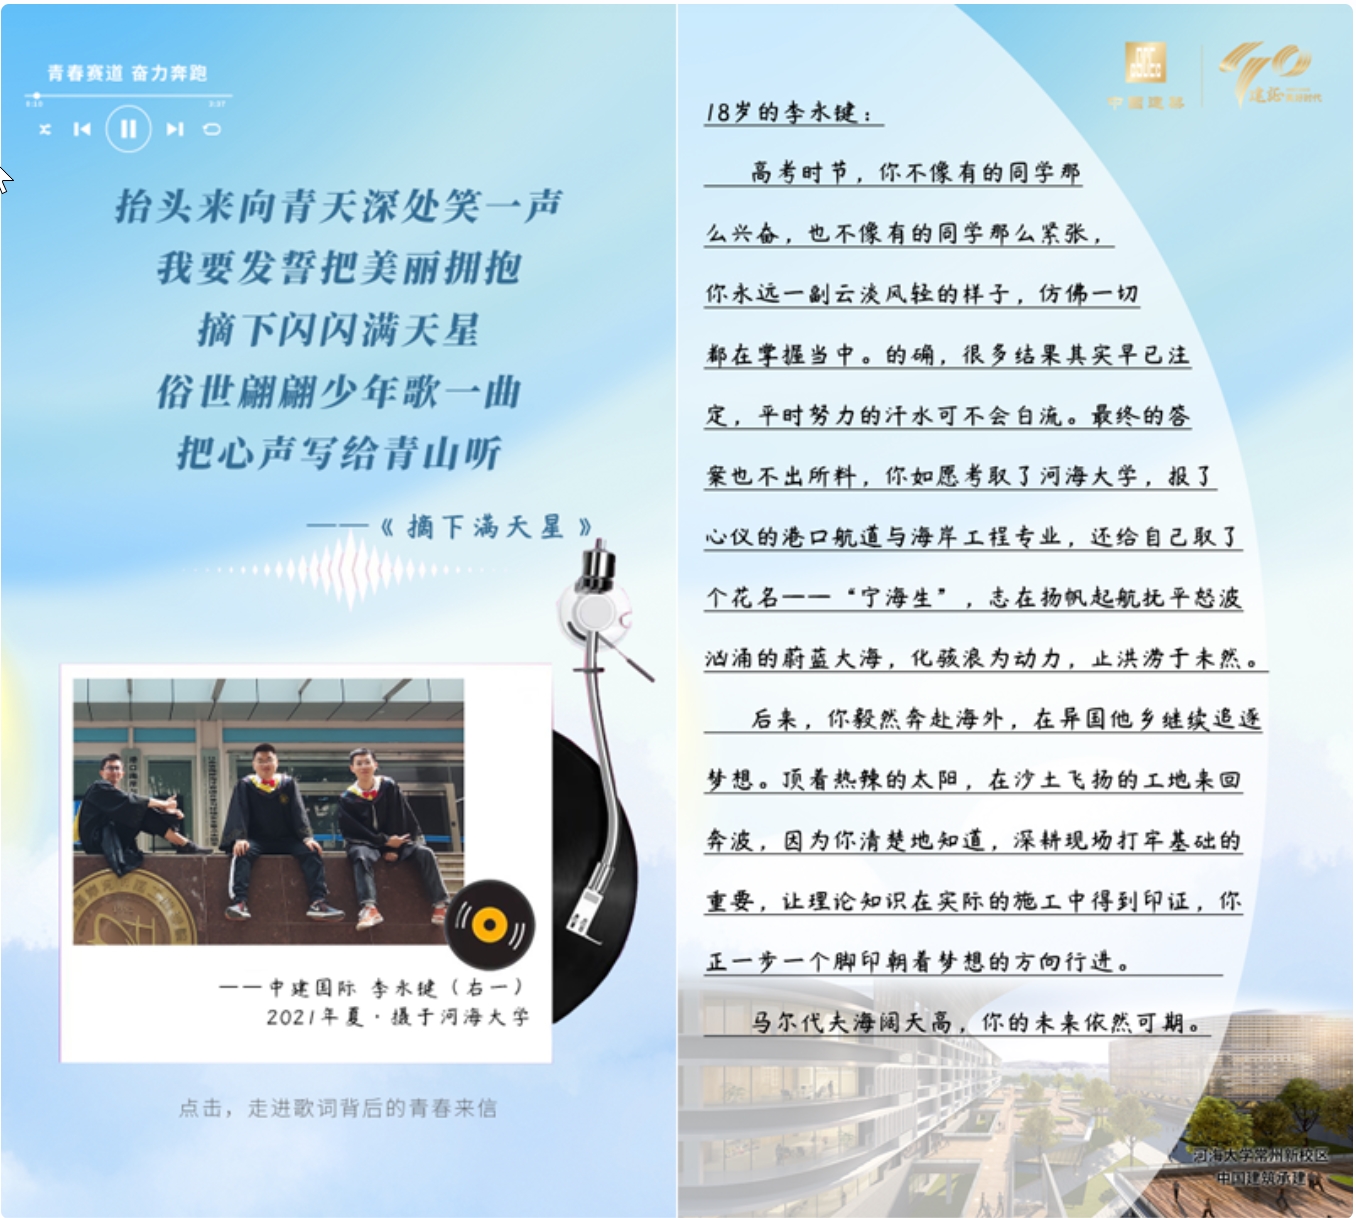 云南省春城建筑工程总公司消防设施晋级改造工程监理投标公告